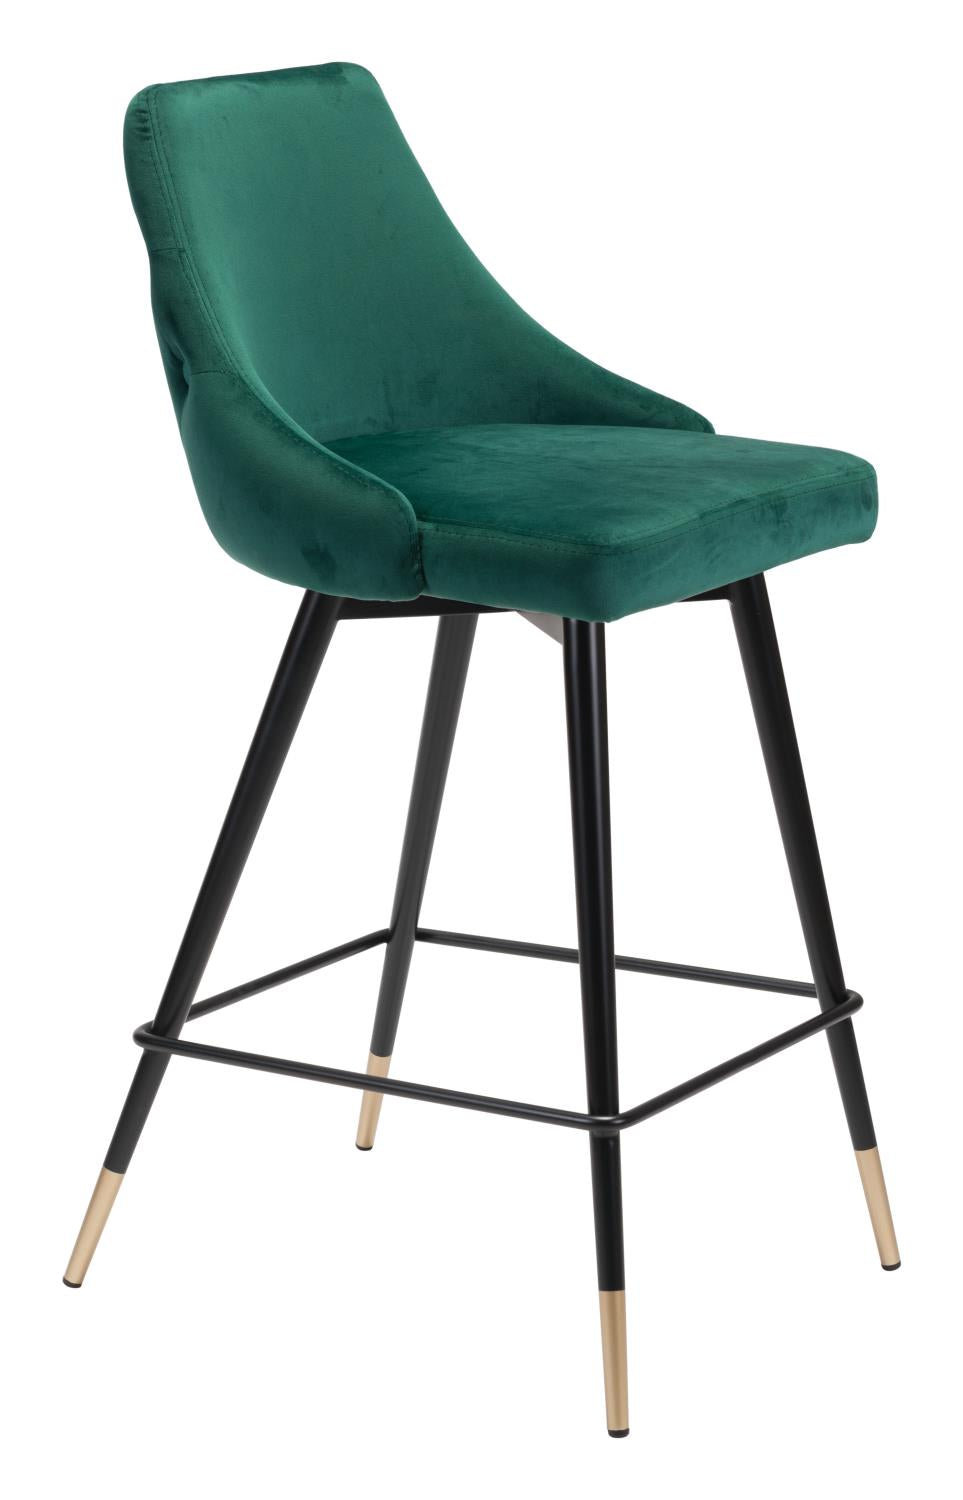 Travis Counter Chair - Green Velvet